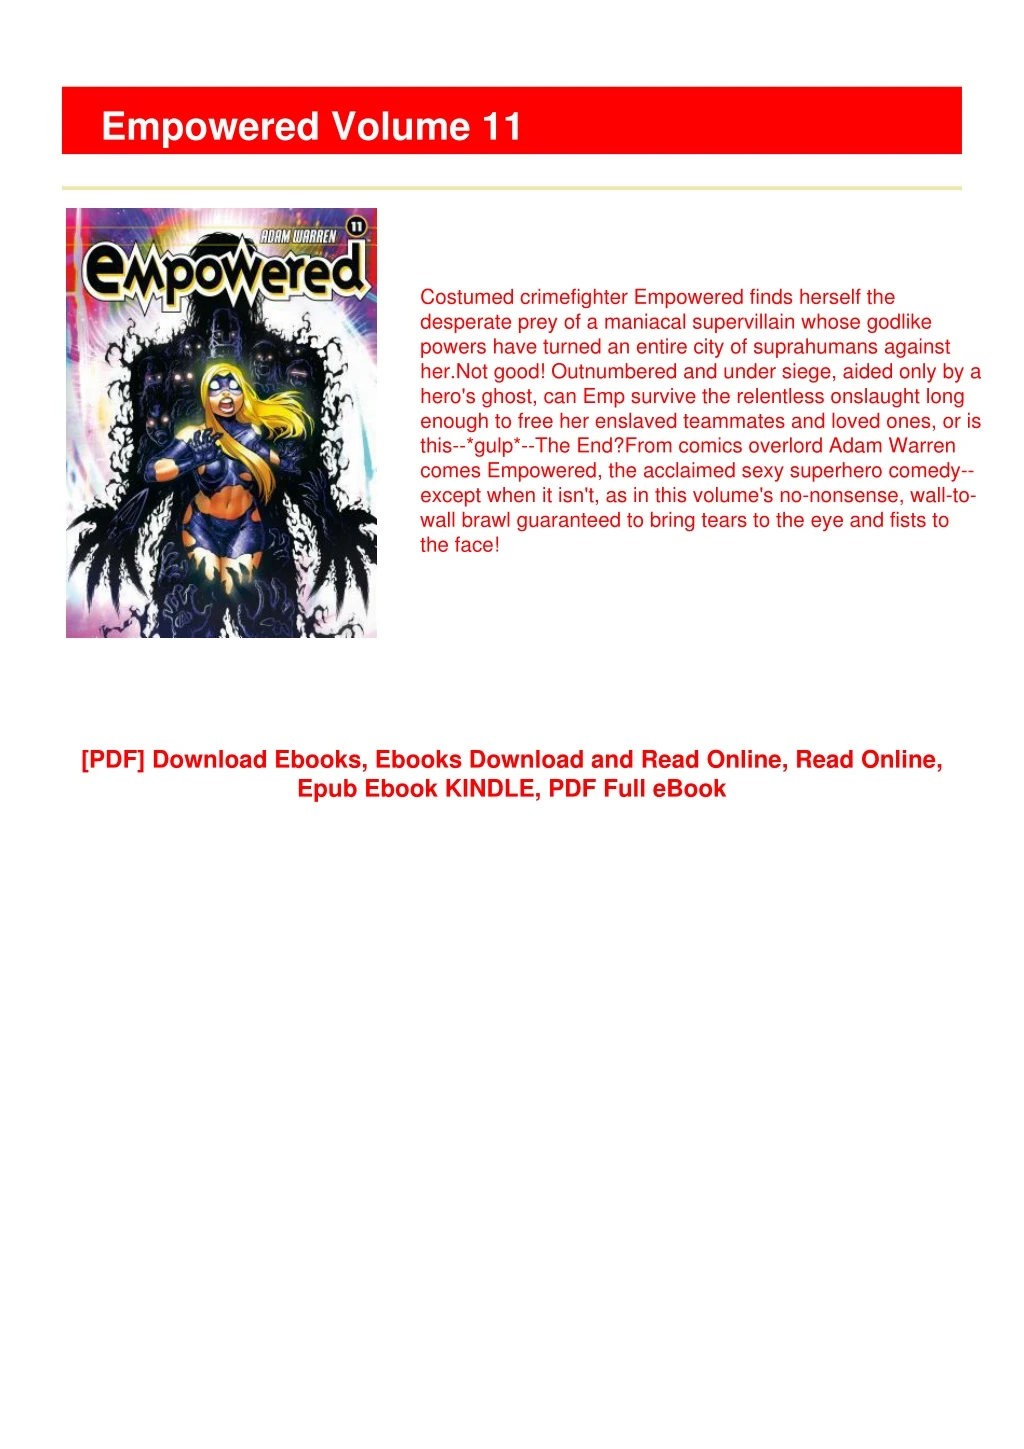 empowered volume 11